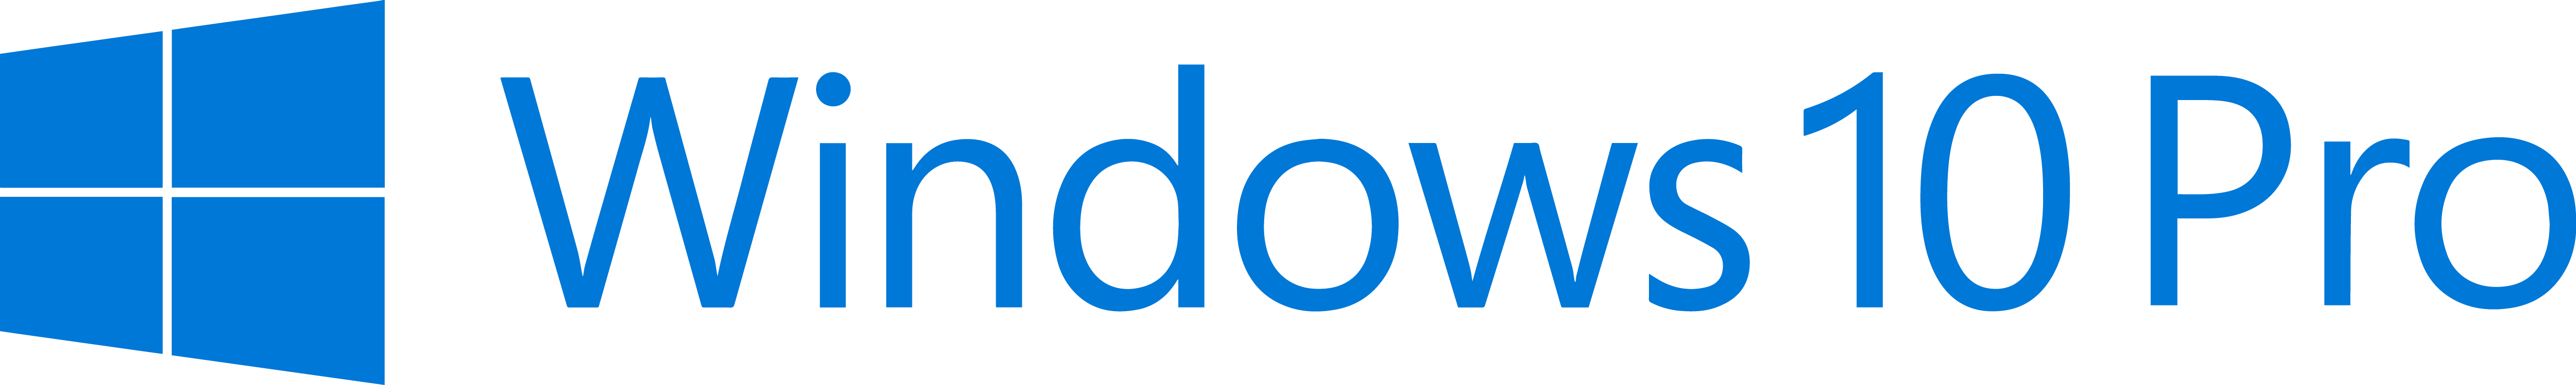 Windows 10 PRO w każdej stacji roboczej HP